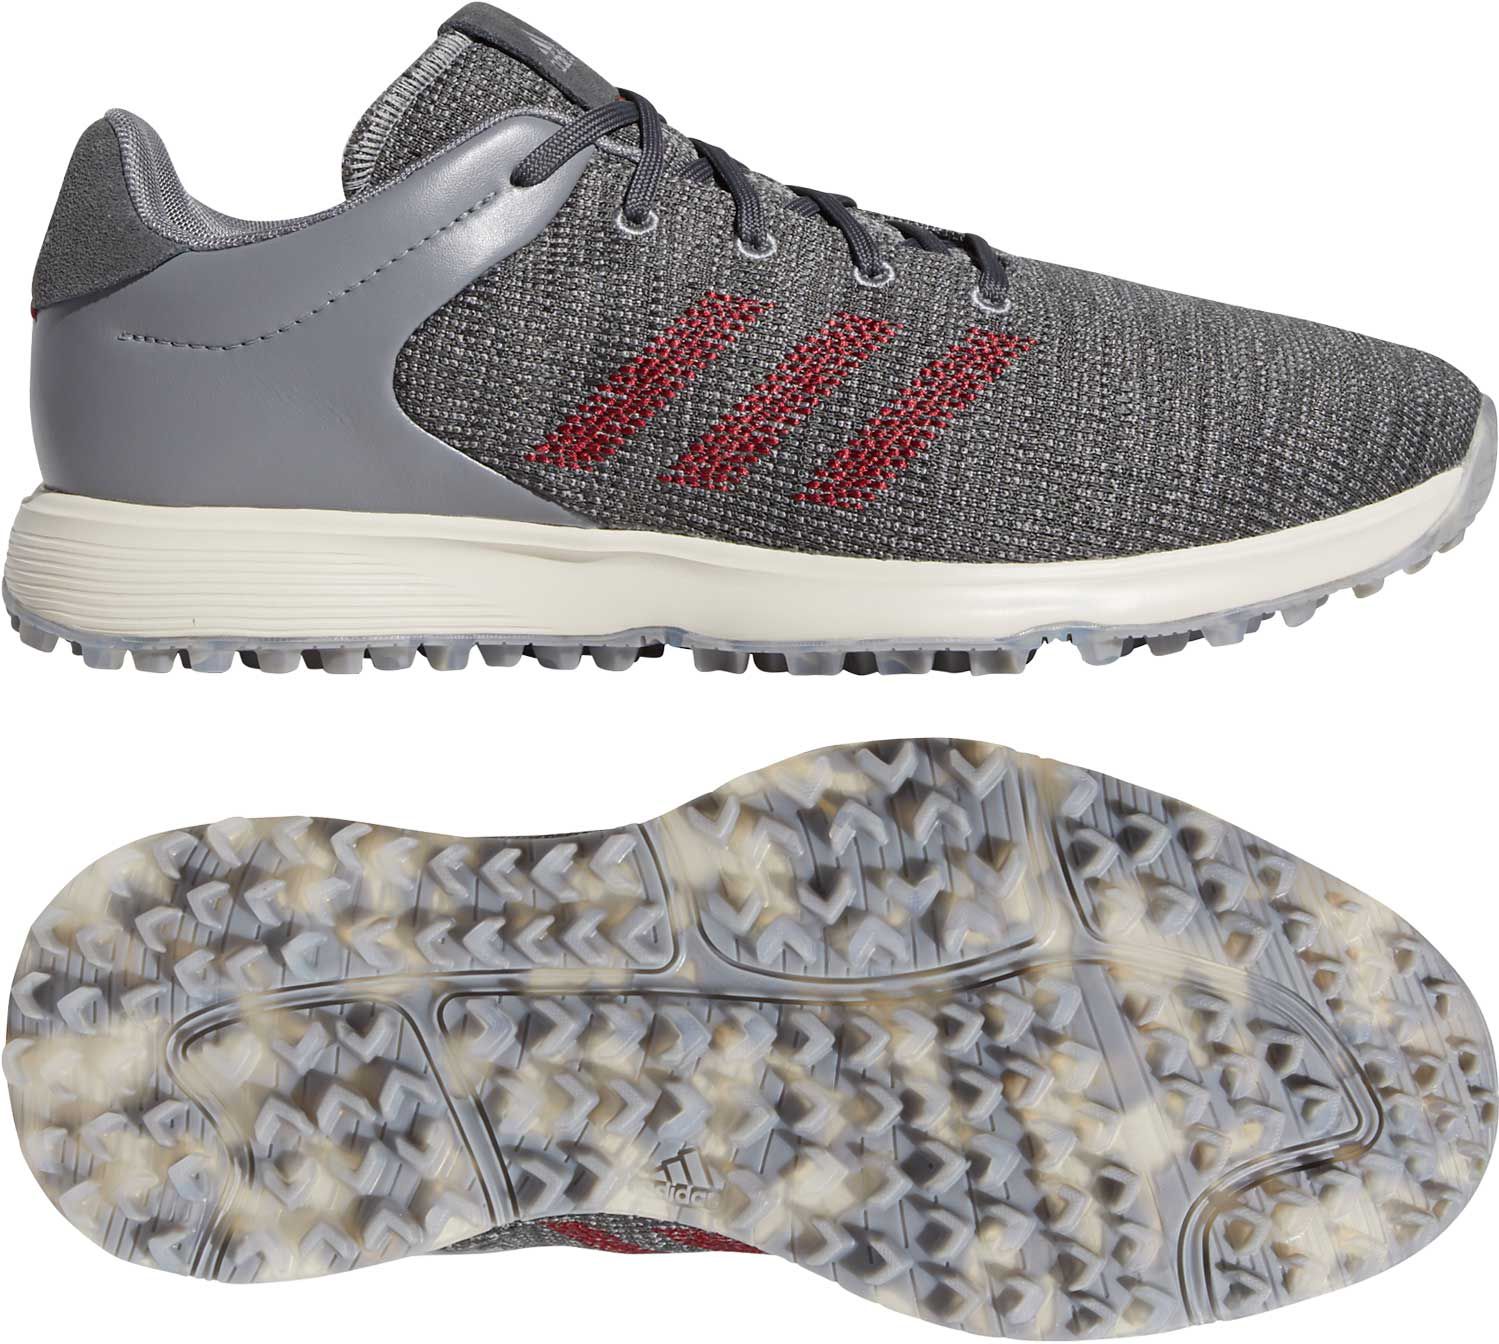 grey adidas golf shoes